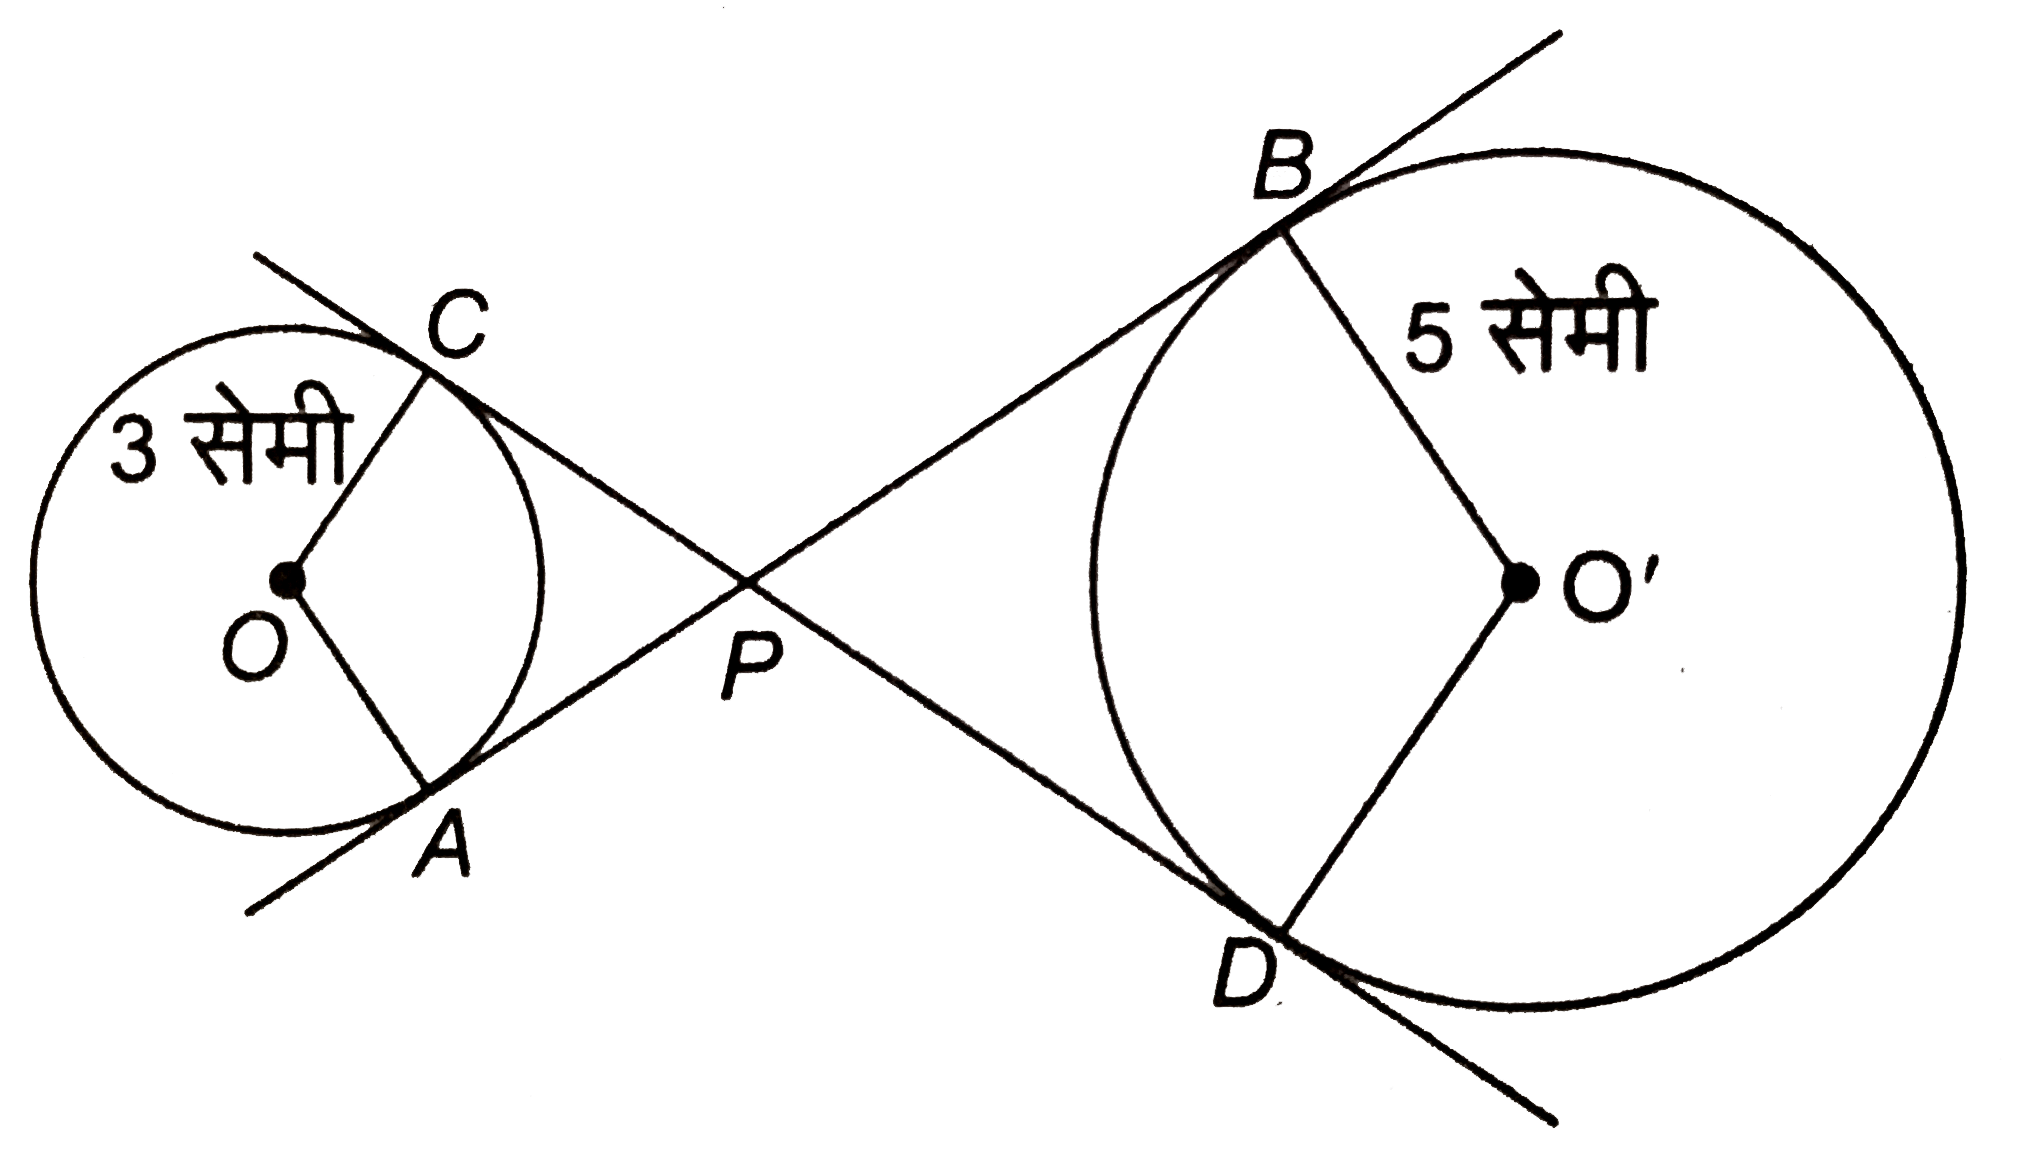 दिये चित्र में, O और O' केन्द्र वाले दो वृत्तों की उभयनिष्ठ स्पर्शिया CPD और APB है। दोनों वृत्तों की त्रिज्याये क्रमशः 3 सेमी और 5 सेमी है। यदि AP:PB=1:3 और CP =4 सेमी है, तो PB और OO की लम्बाई ज्ञात कीजिए।